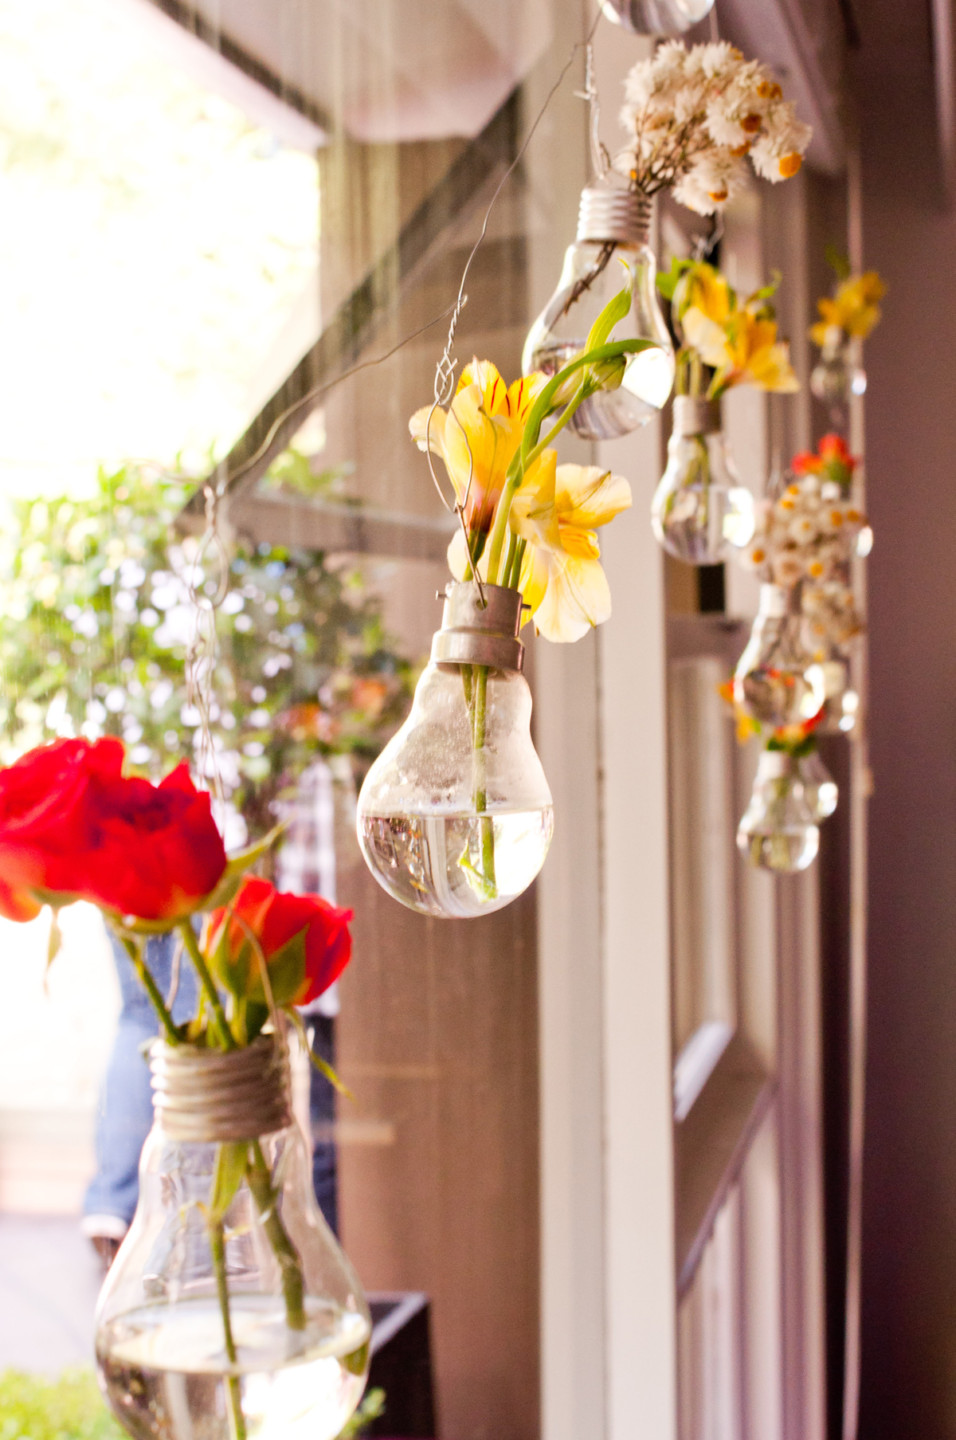 Light Bulb Flower Vase